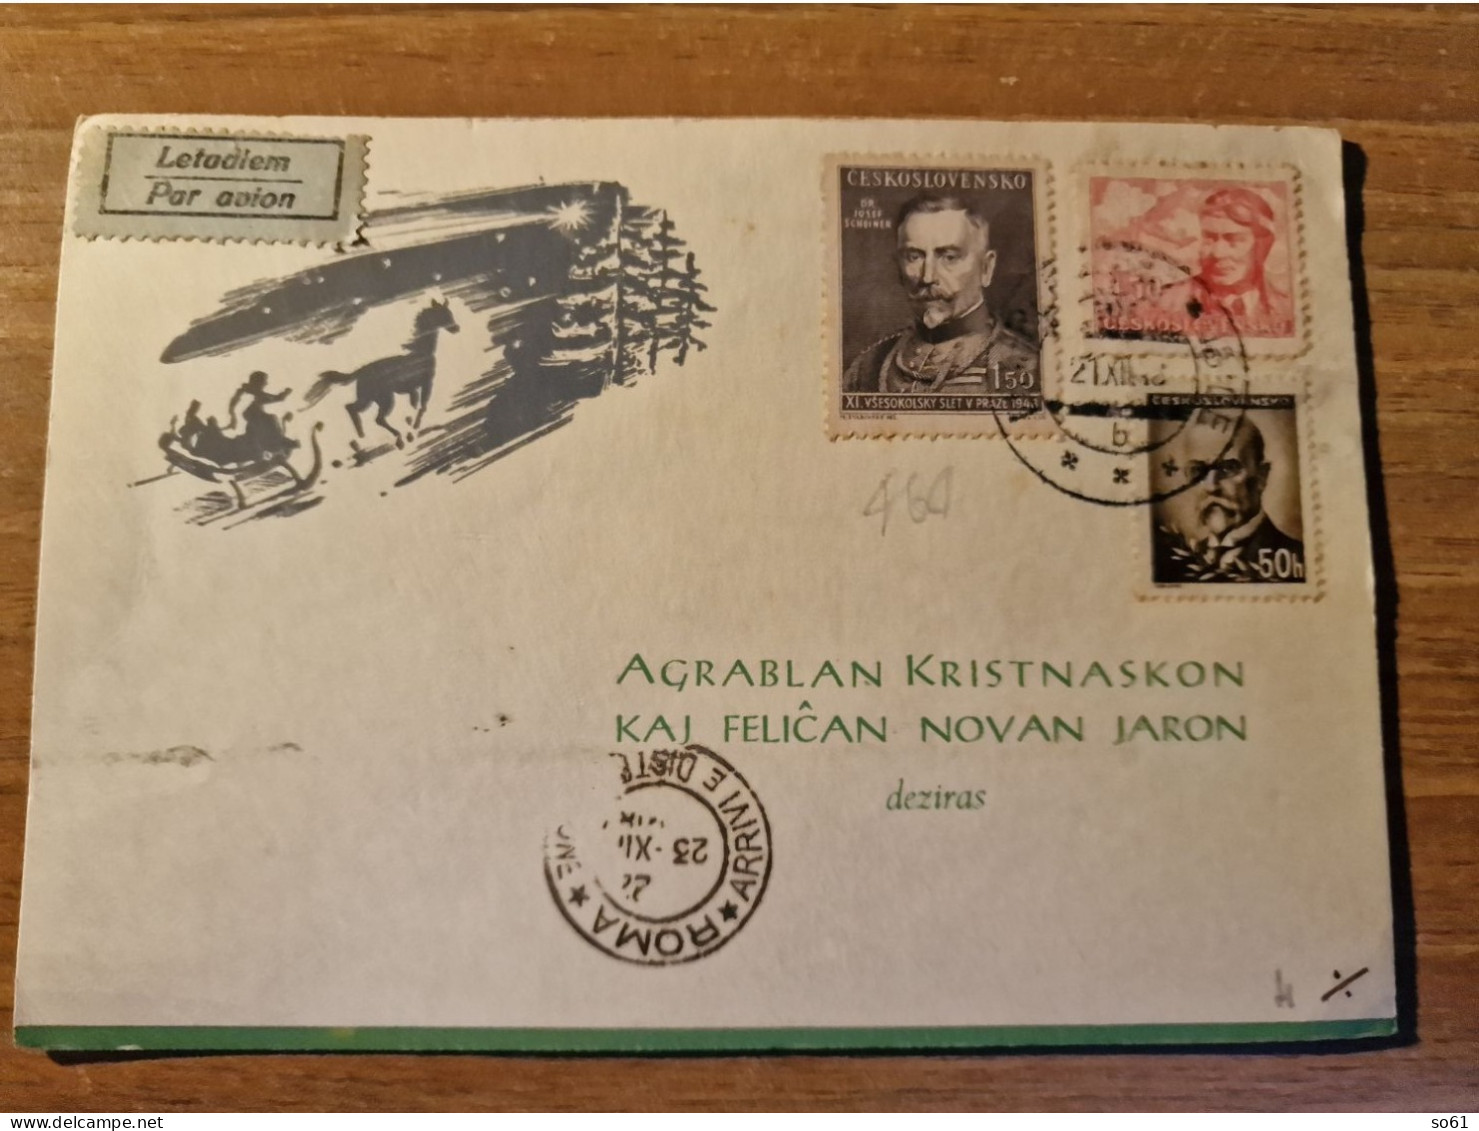 18872.    Cartolina Postale Letadlem  Par Avion Ceskoslovensko Francobolli 1948 - Storia Postale